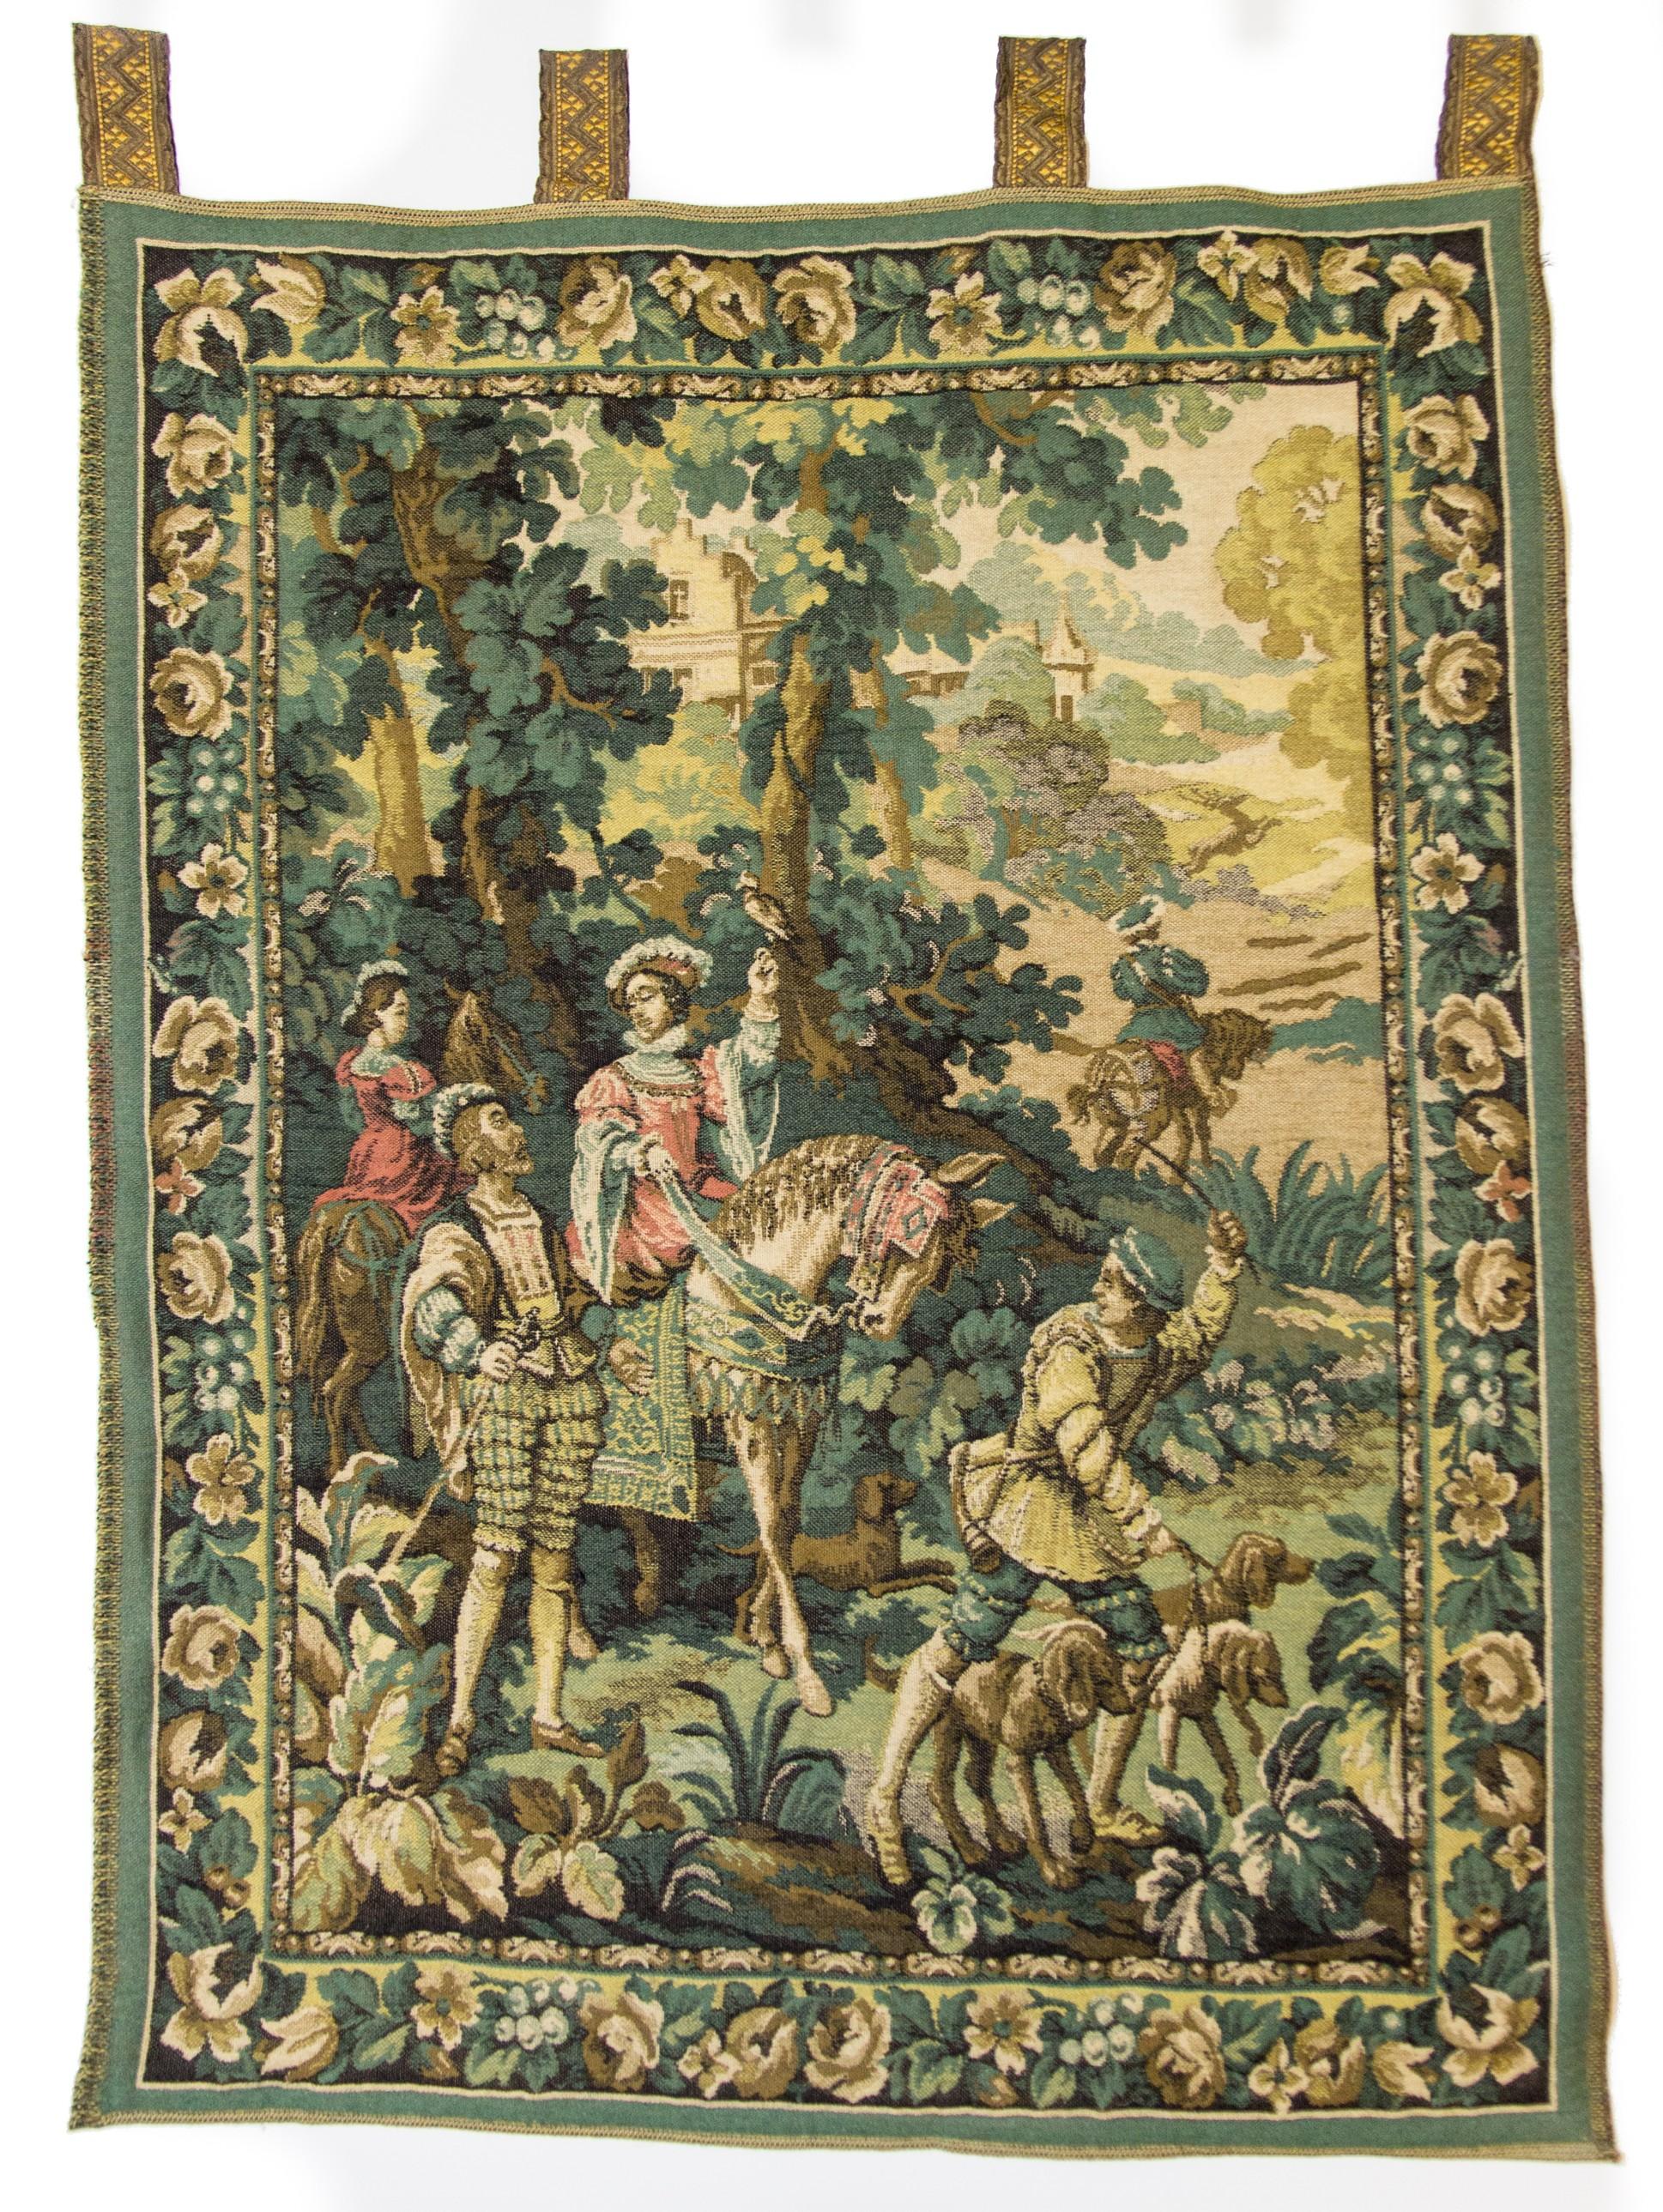 Cette tapisserie vintage colorée montre une scène de chasse européenne au 18ème siècle.
Il est matelassé en 100% laine et est livré avec 4 boucles pour le suspendre facilement. 
Cette tapisserie murale a été fabriquée en Belgique dans la seconde